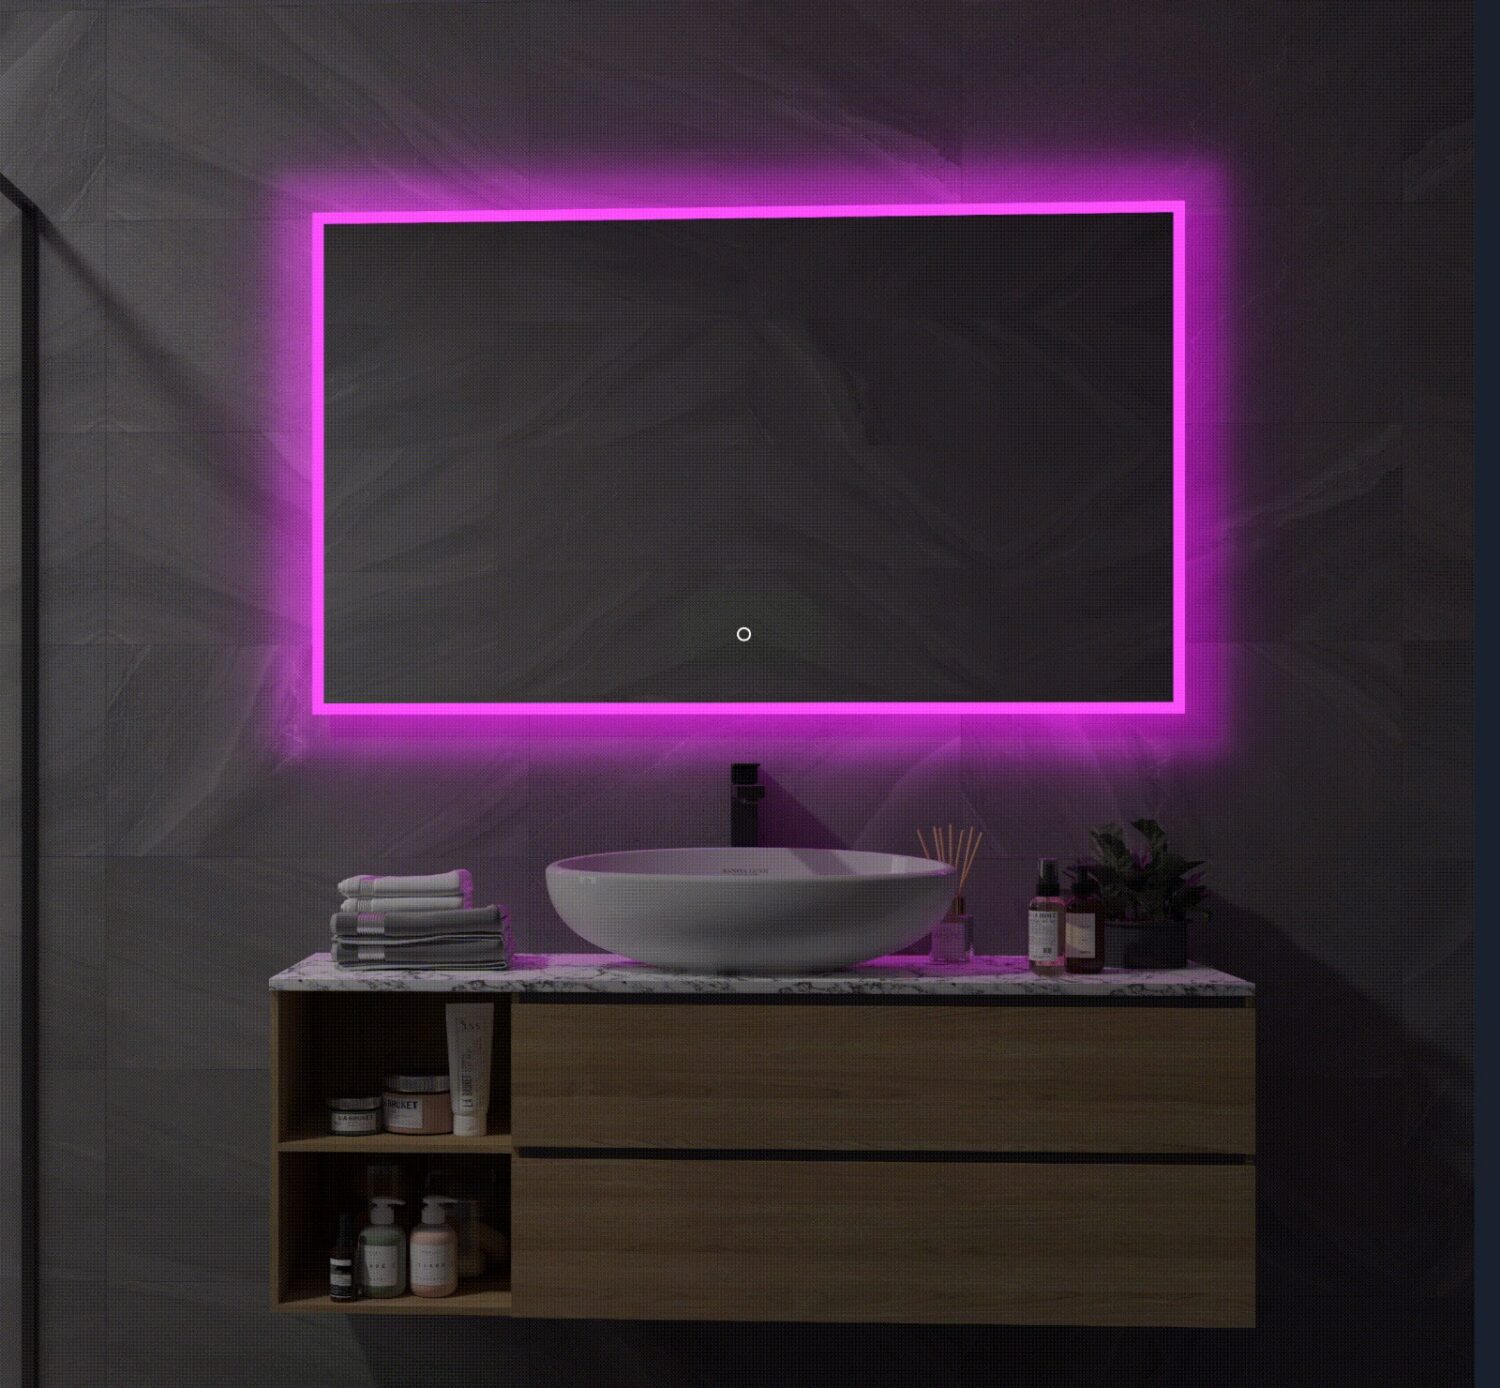 Druipend gebrek Profeet Slimme spiegel met RGB verlichting, verwarming, touch sensor en  afstandsbediening 120x70 cm - Designspiegels